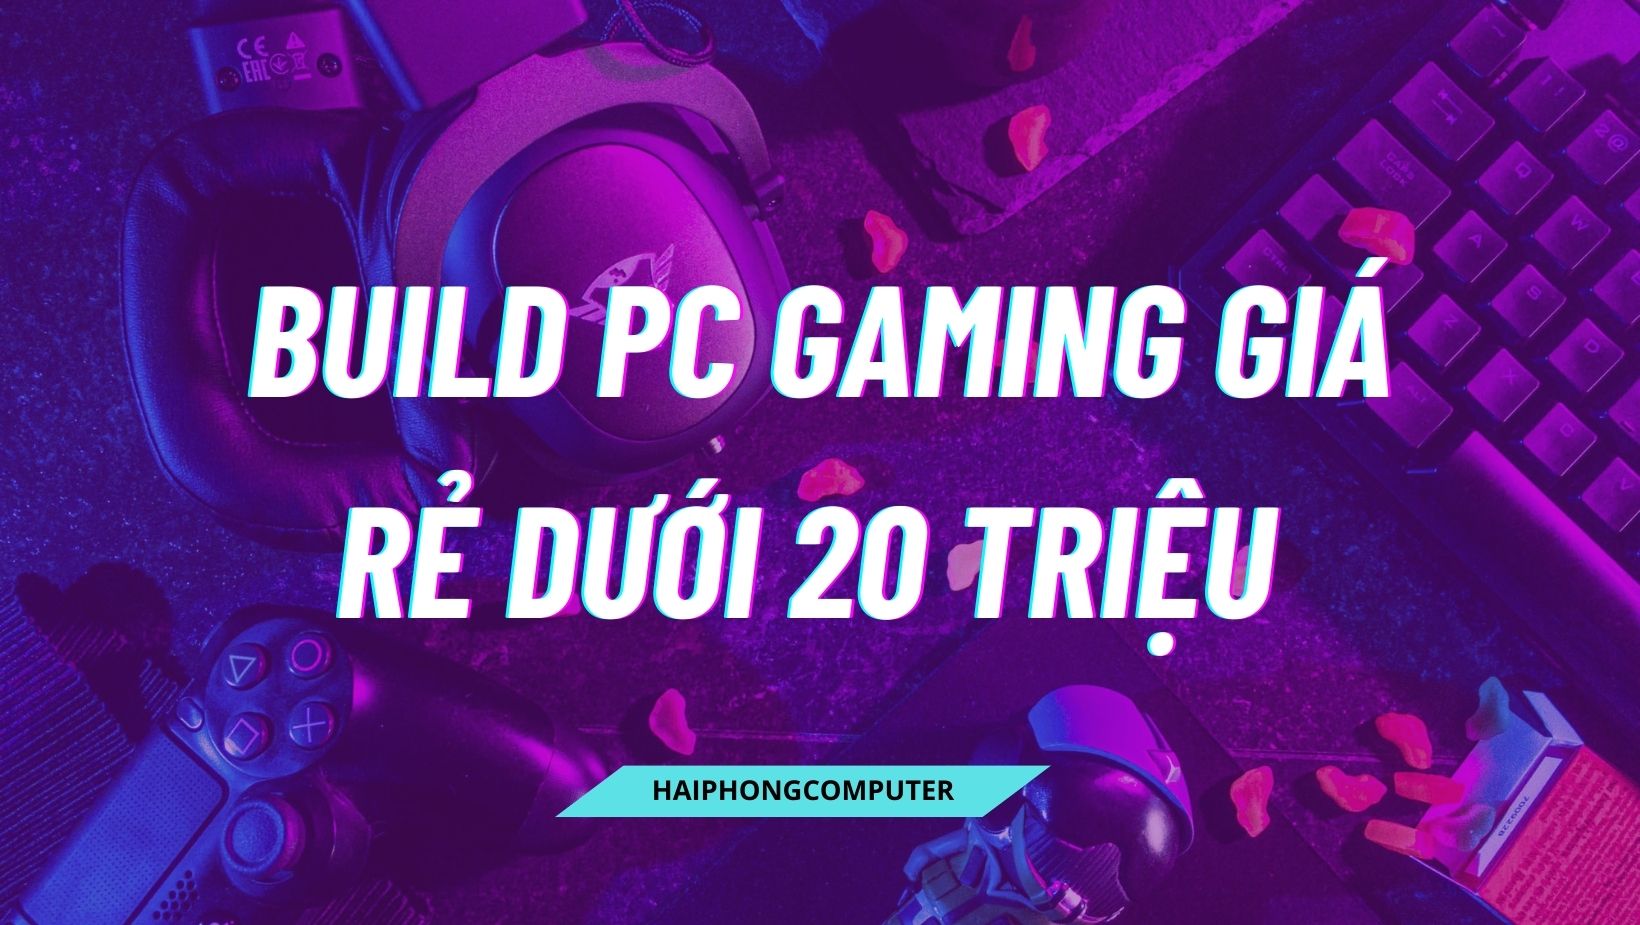 Hướng Dẫn Build PC Gaming Giá Rẻ Dưới 20 Triệu